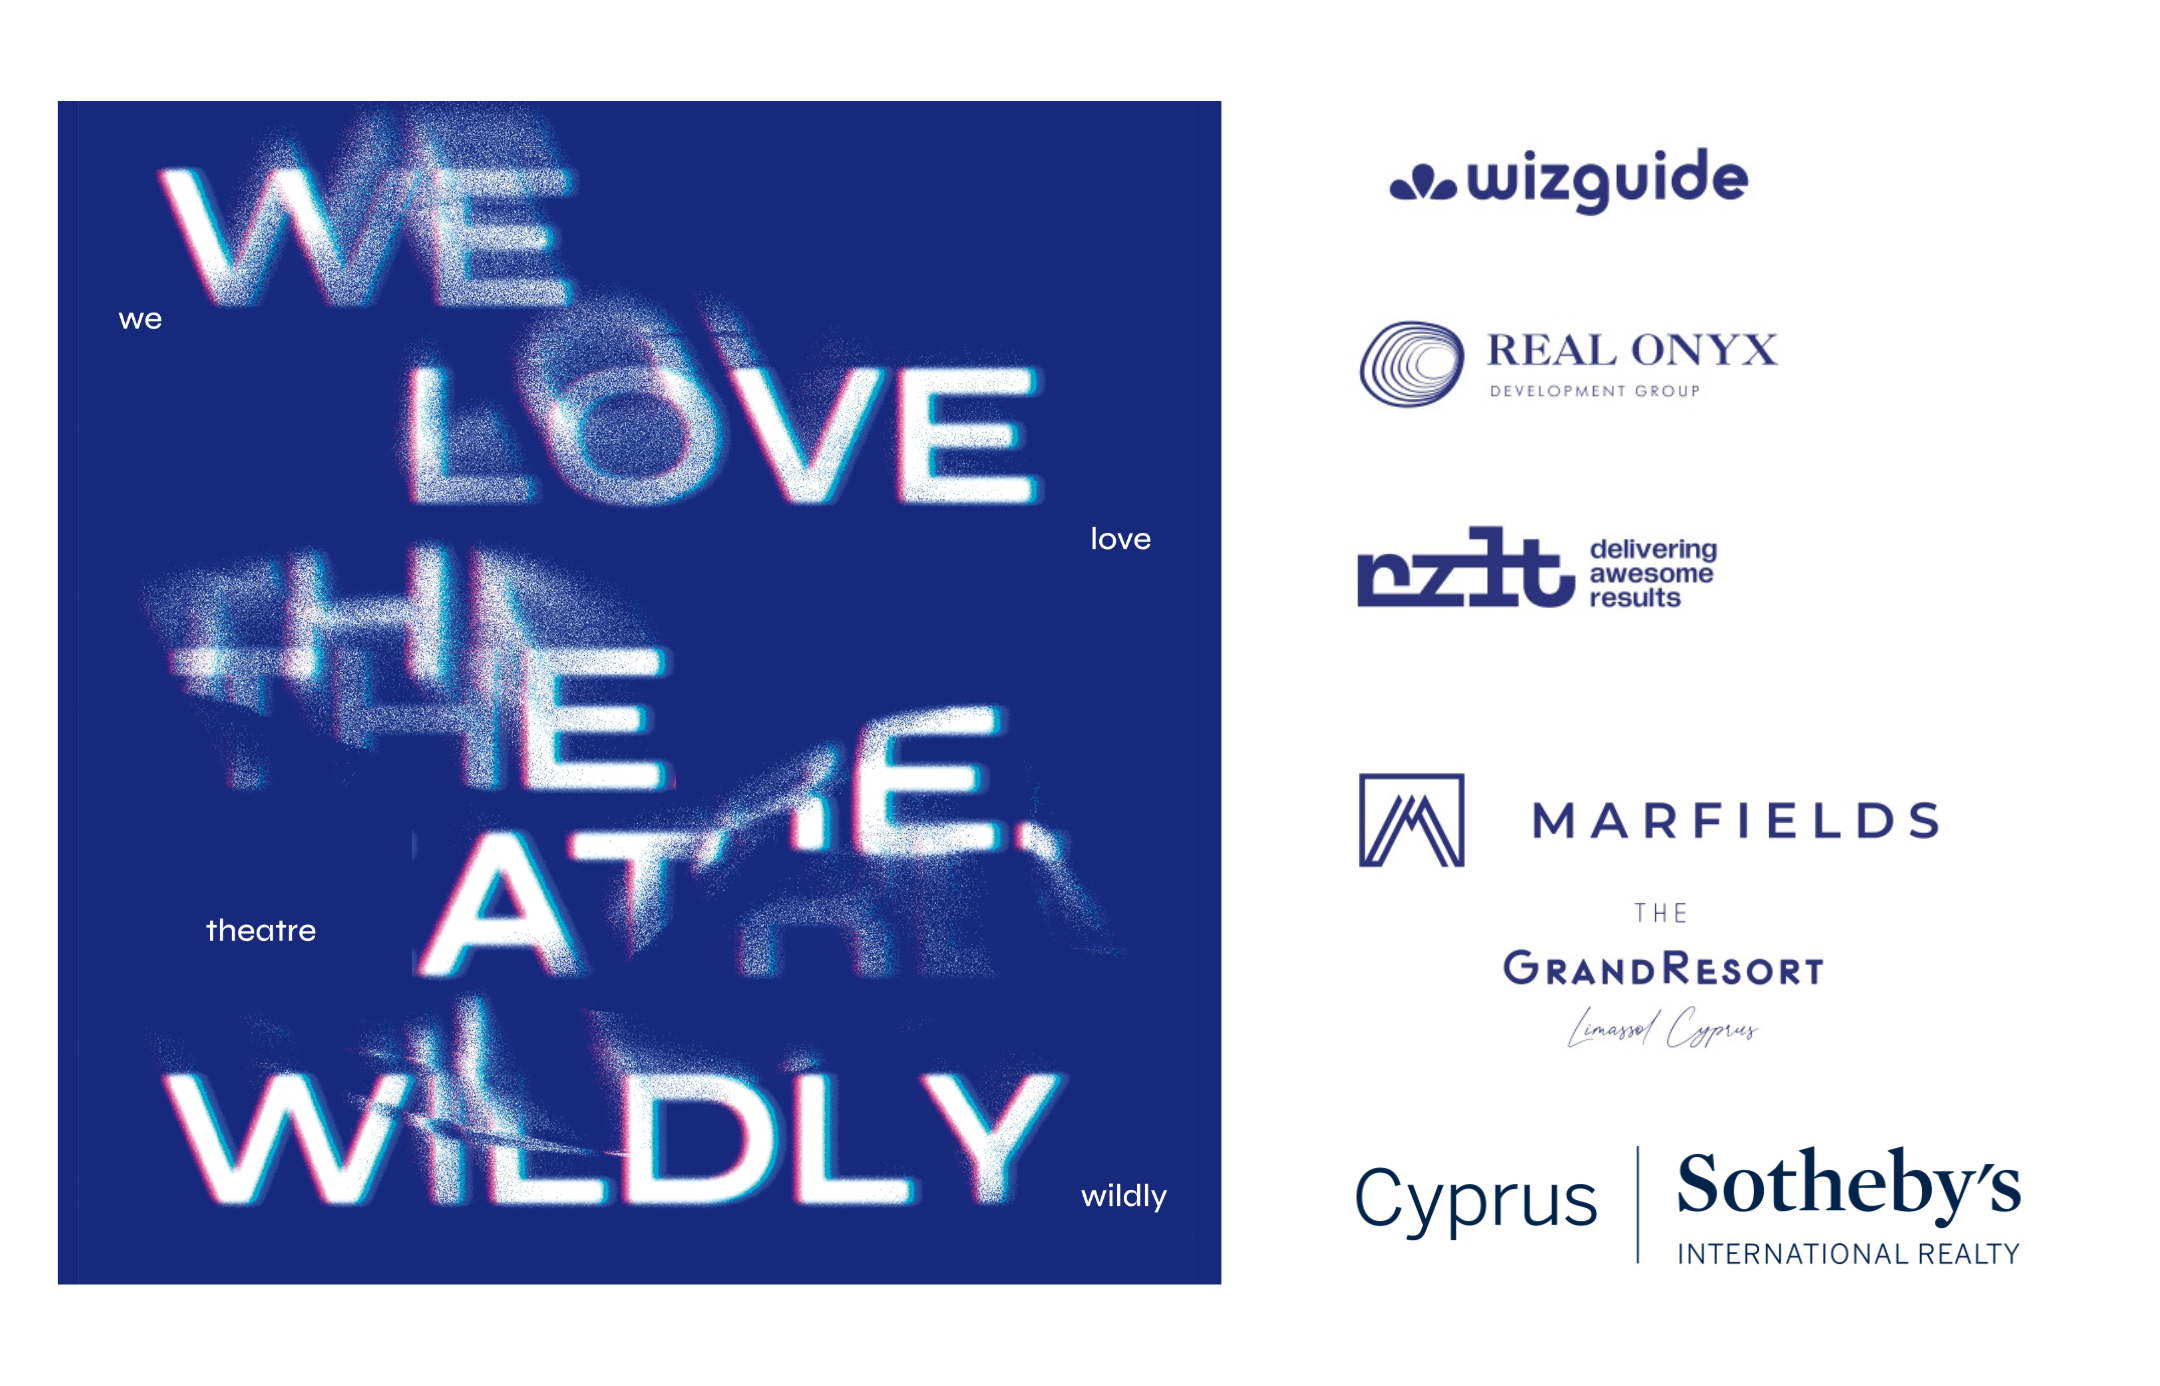 Cyprus Sotheby’s International Realty партнер международного театральный фестиваля CITF